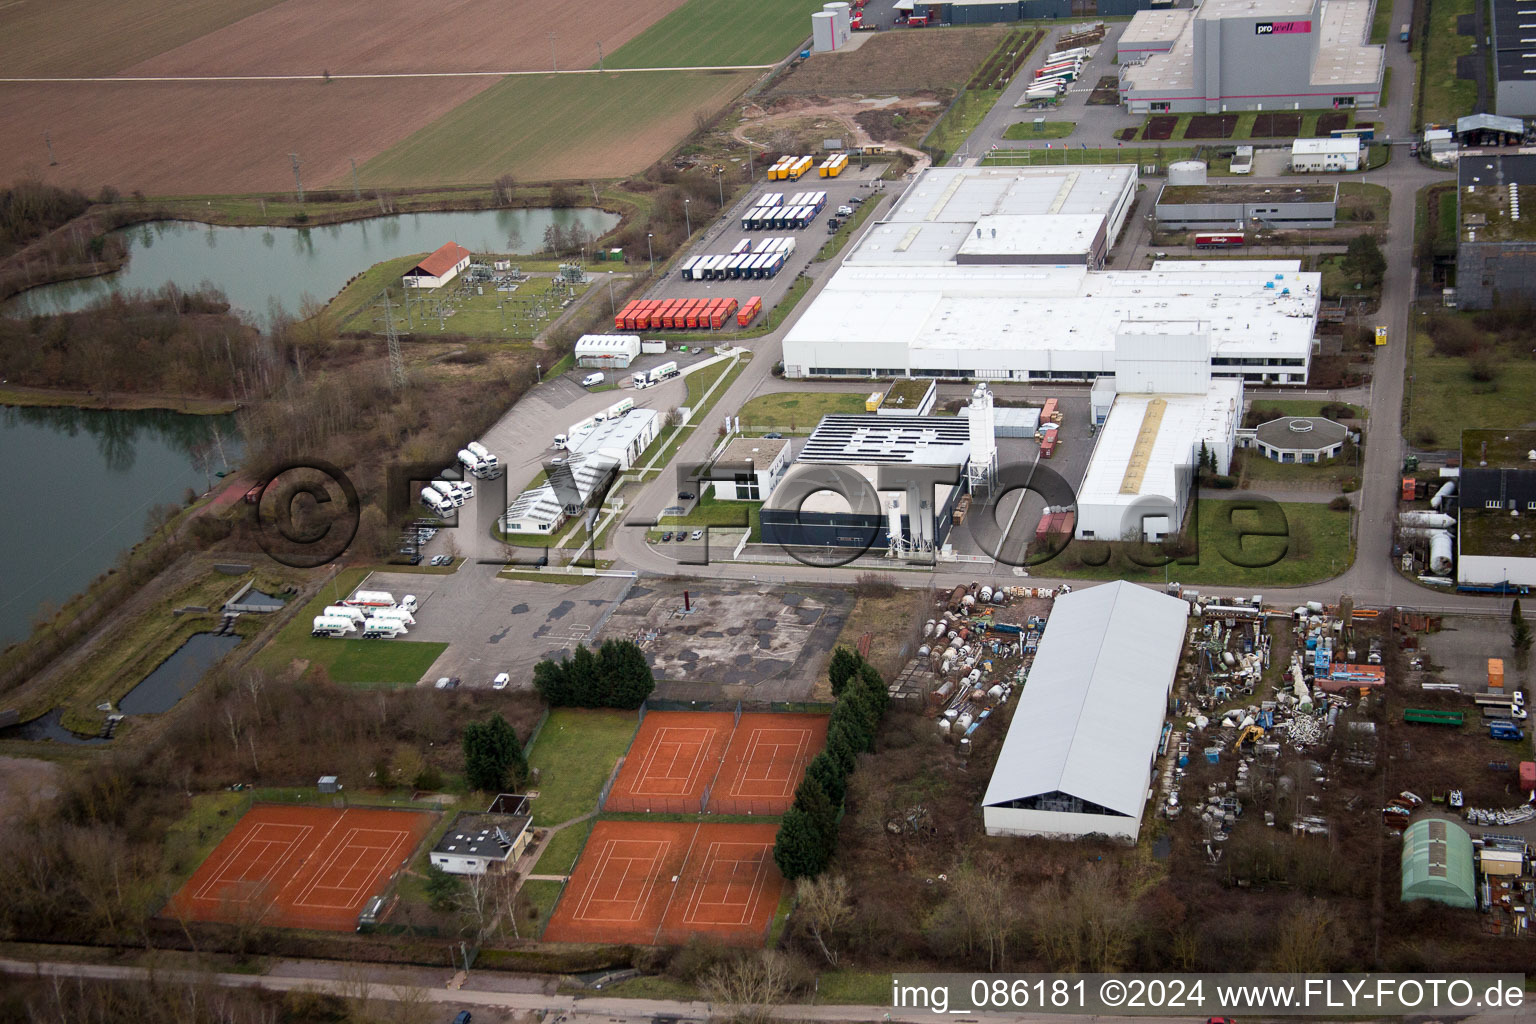 Vue aérienne de Zone industrielle à Offenbach an der Queich dans le département Rhénanie-Palatinat, Allemagne